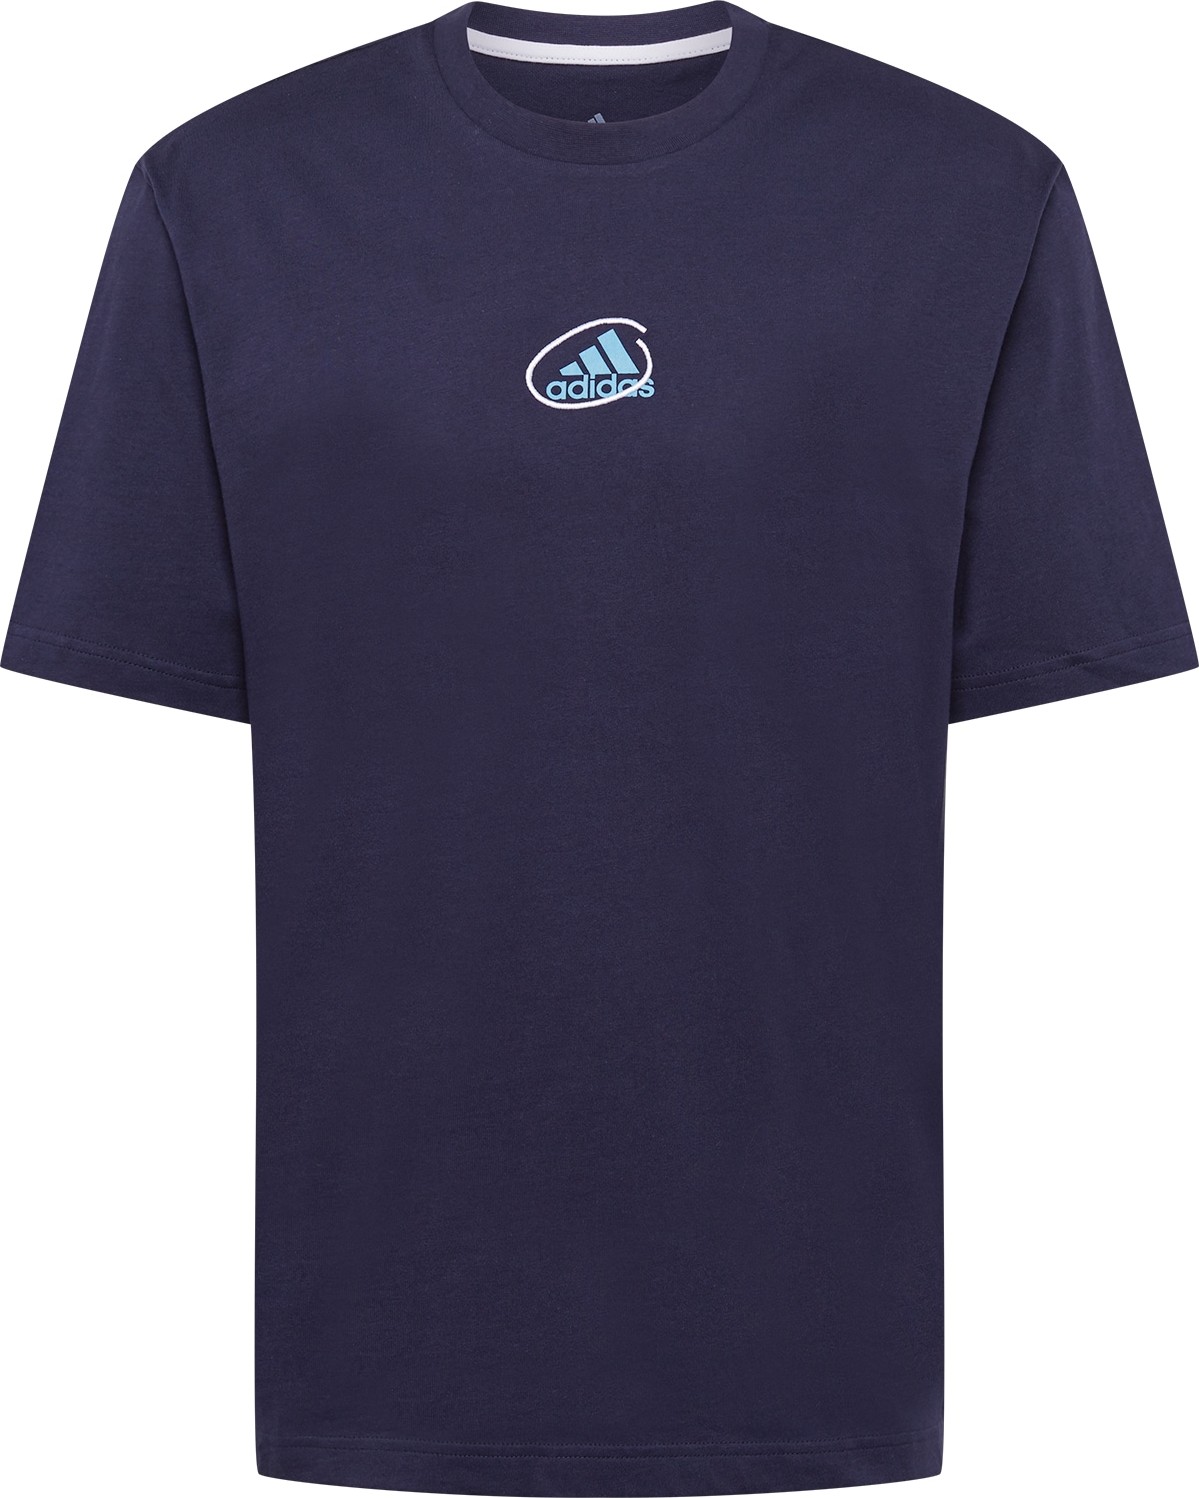 ADIDAS PERFORMANCE Funkční tričko 'SCRIBBLE' námořnická modř / světlemodrá / bílá